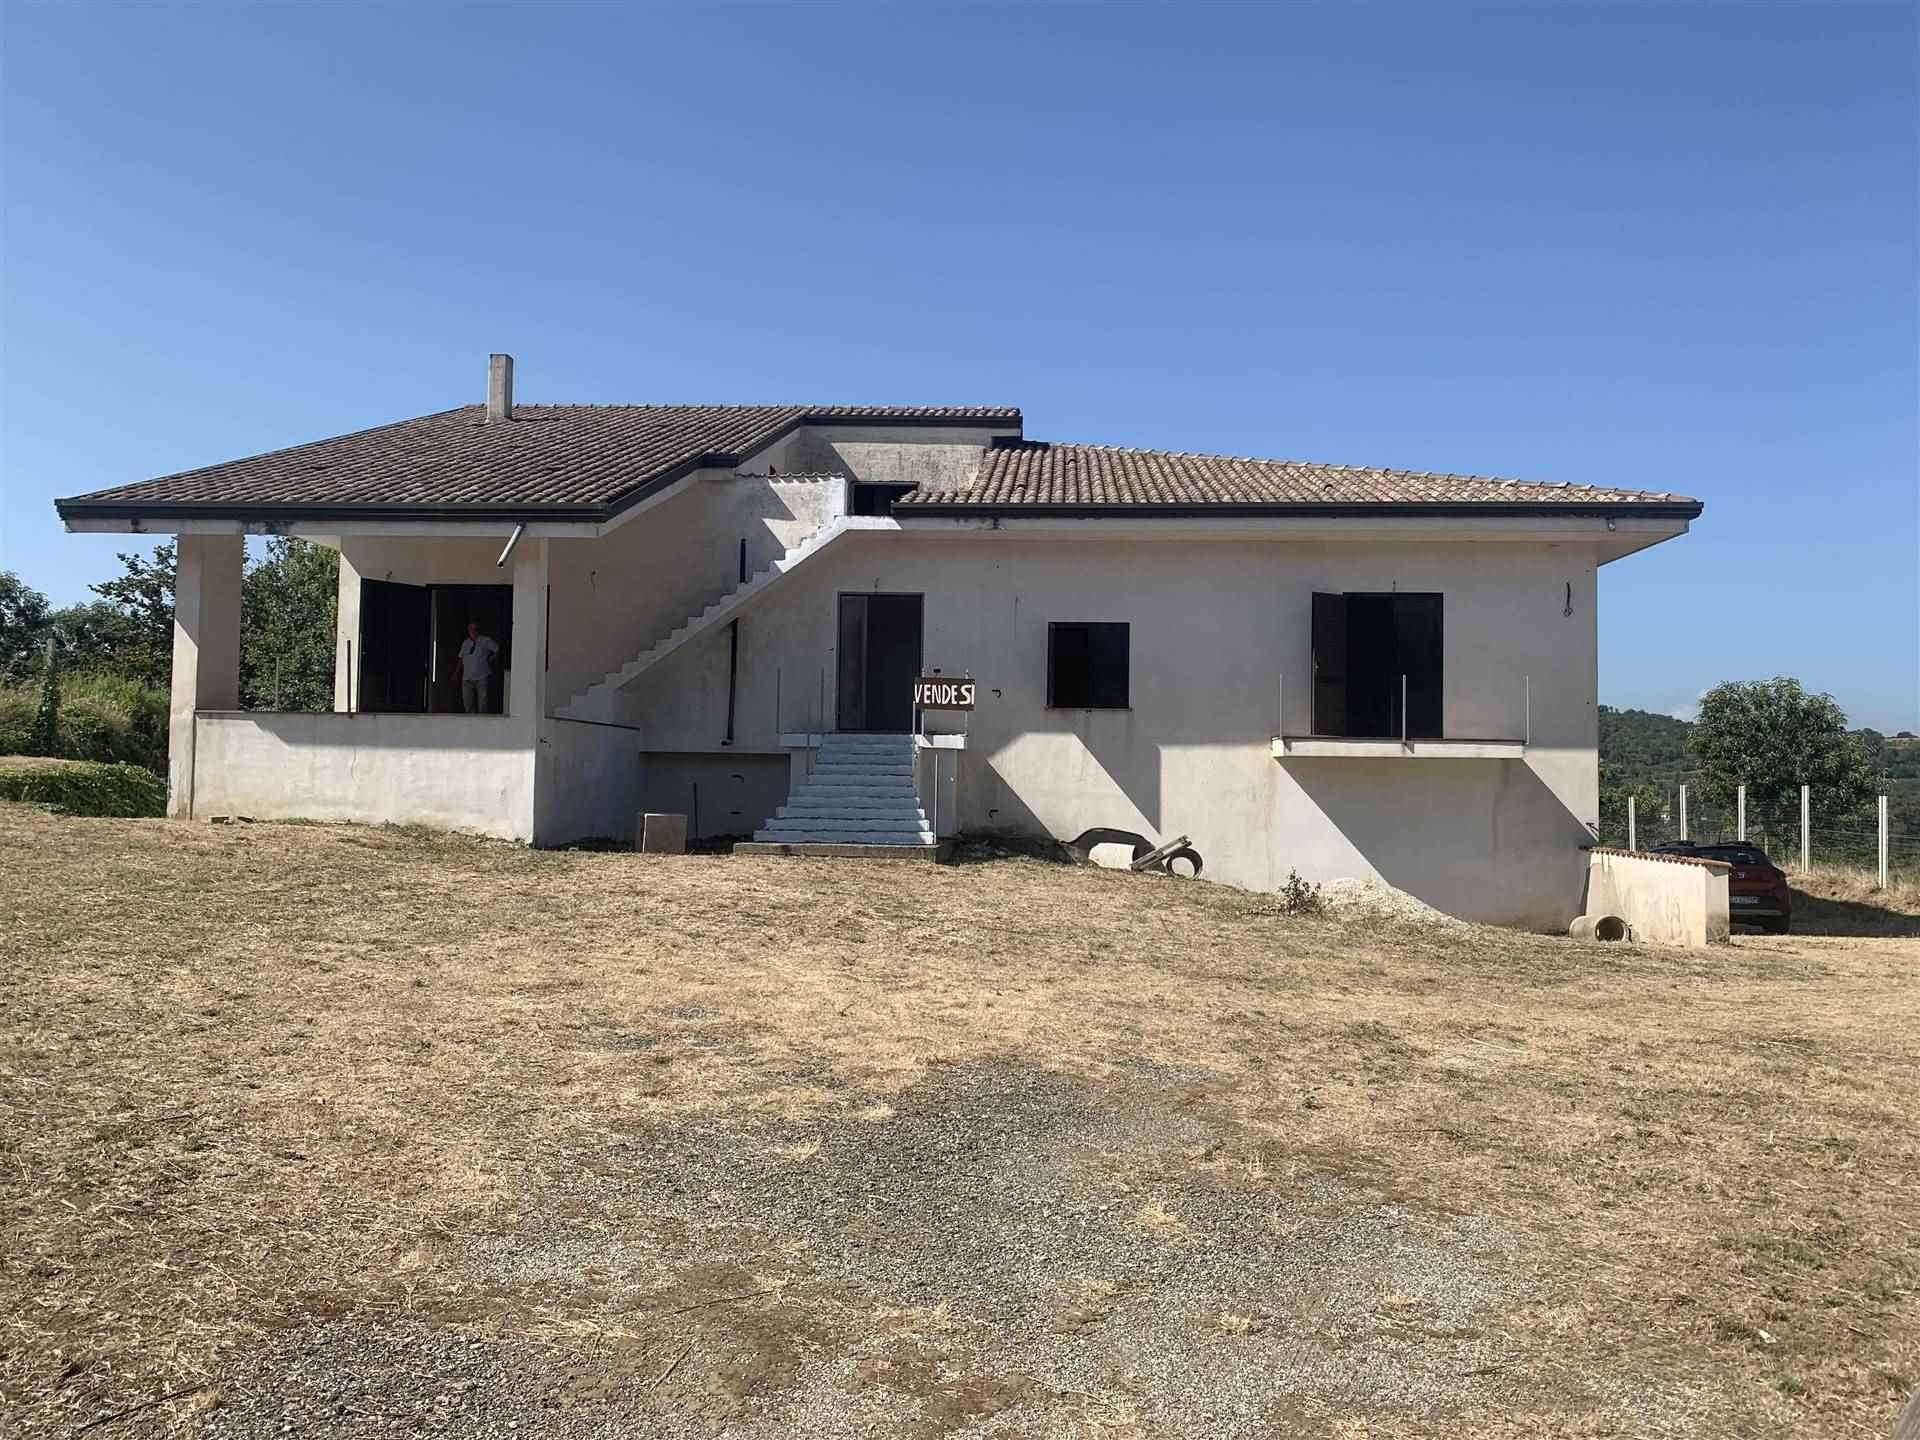 Villa in vendita a Teano, 12 locali, prezzo € 130.000 | PortaleAgenzieImmobiliari.it